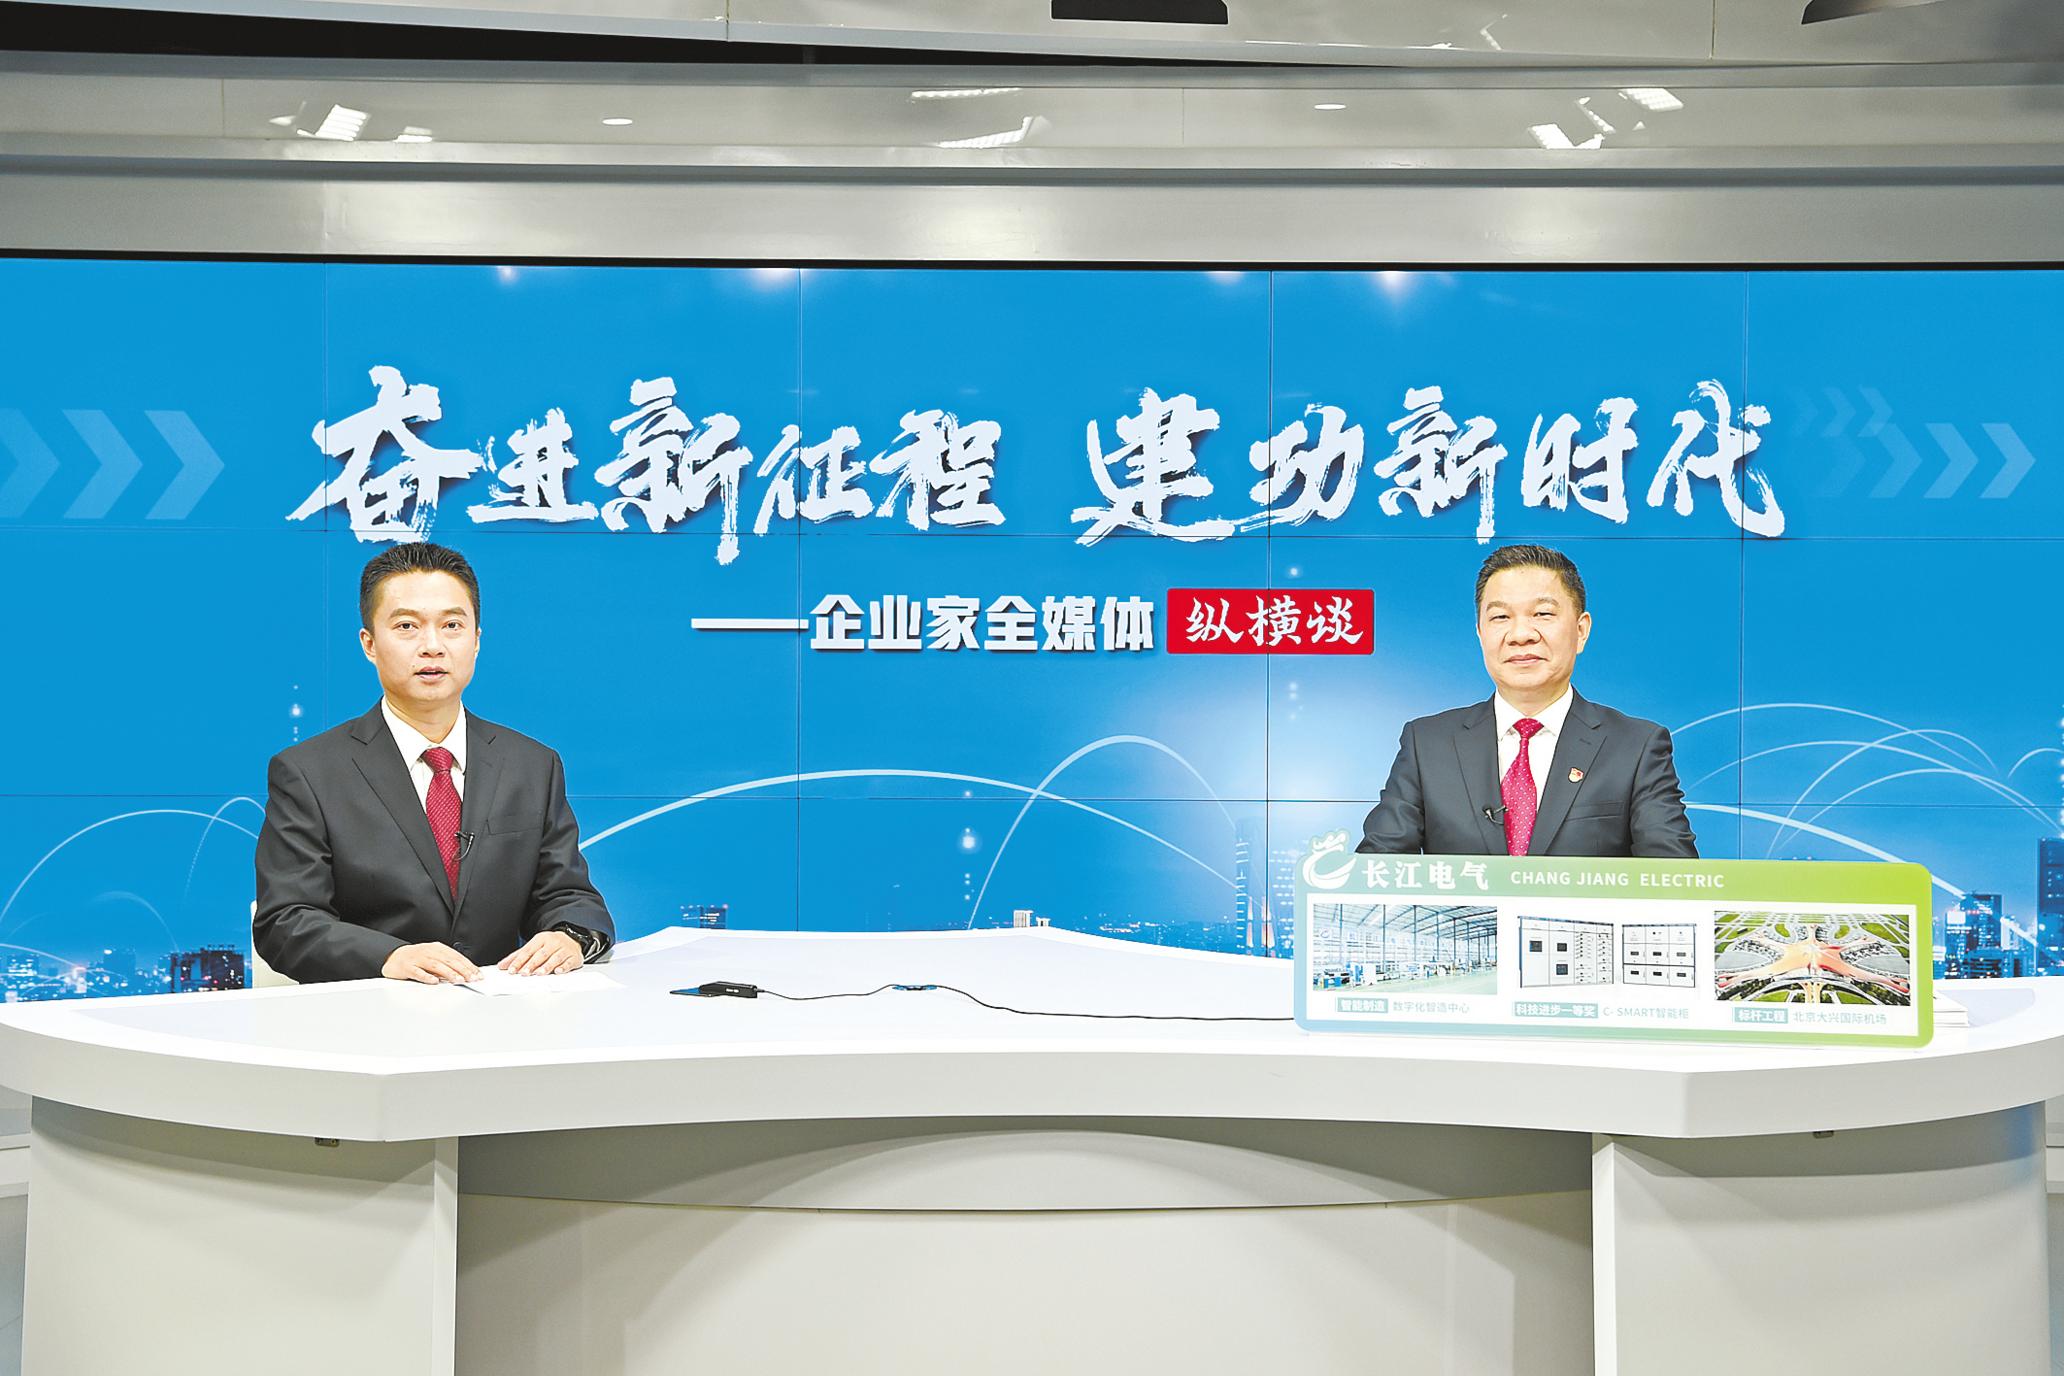 湖北长江电气有限公司党委书记、董事长王新城――点燃智慧能源之光 点亮多个“世界之最”